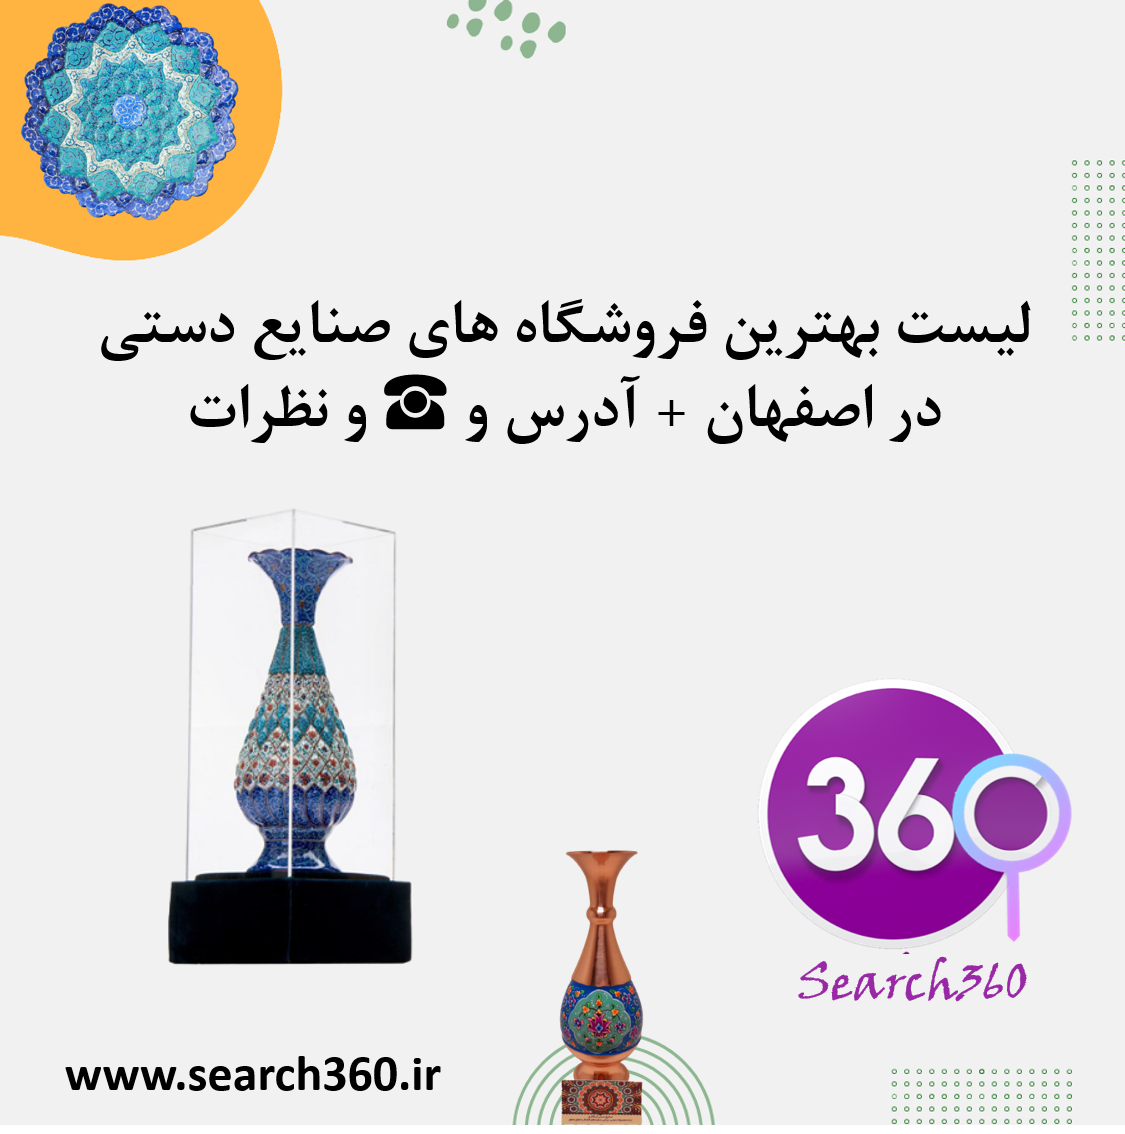 لیست بهترین فروشگاه های صنایع دستی در اصفهان با آدرس و تلفن  و نظرات ☎️ و نظرات